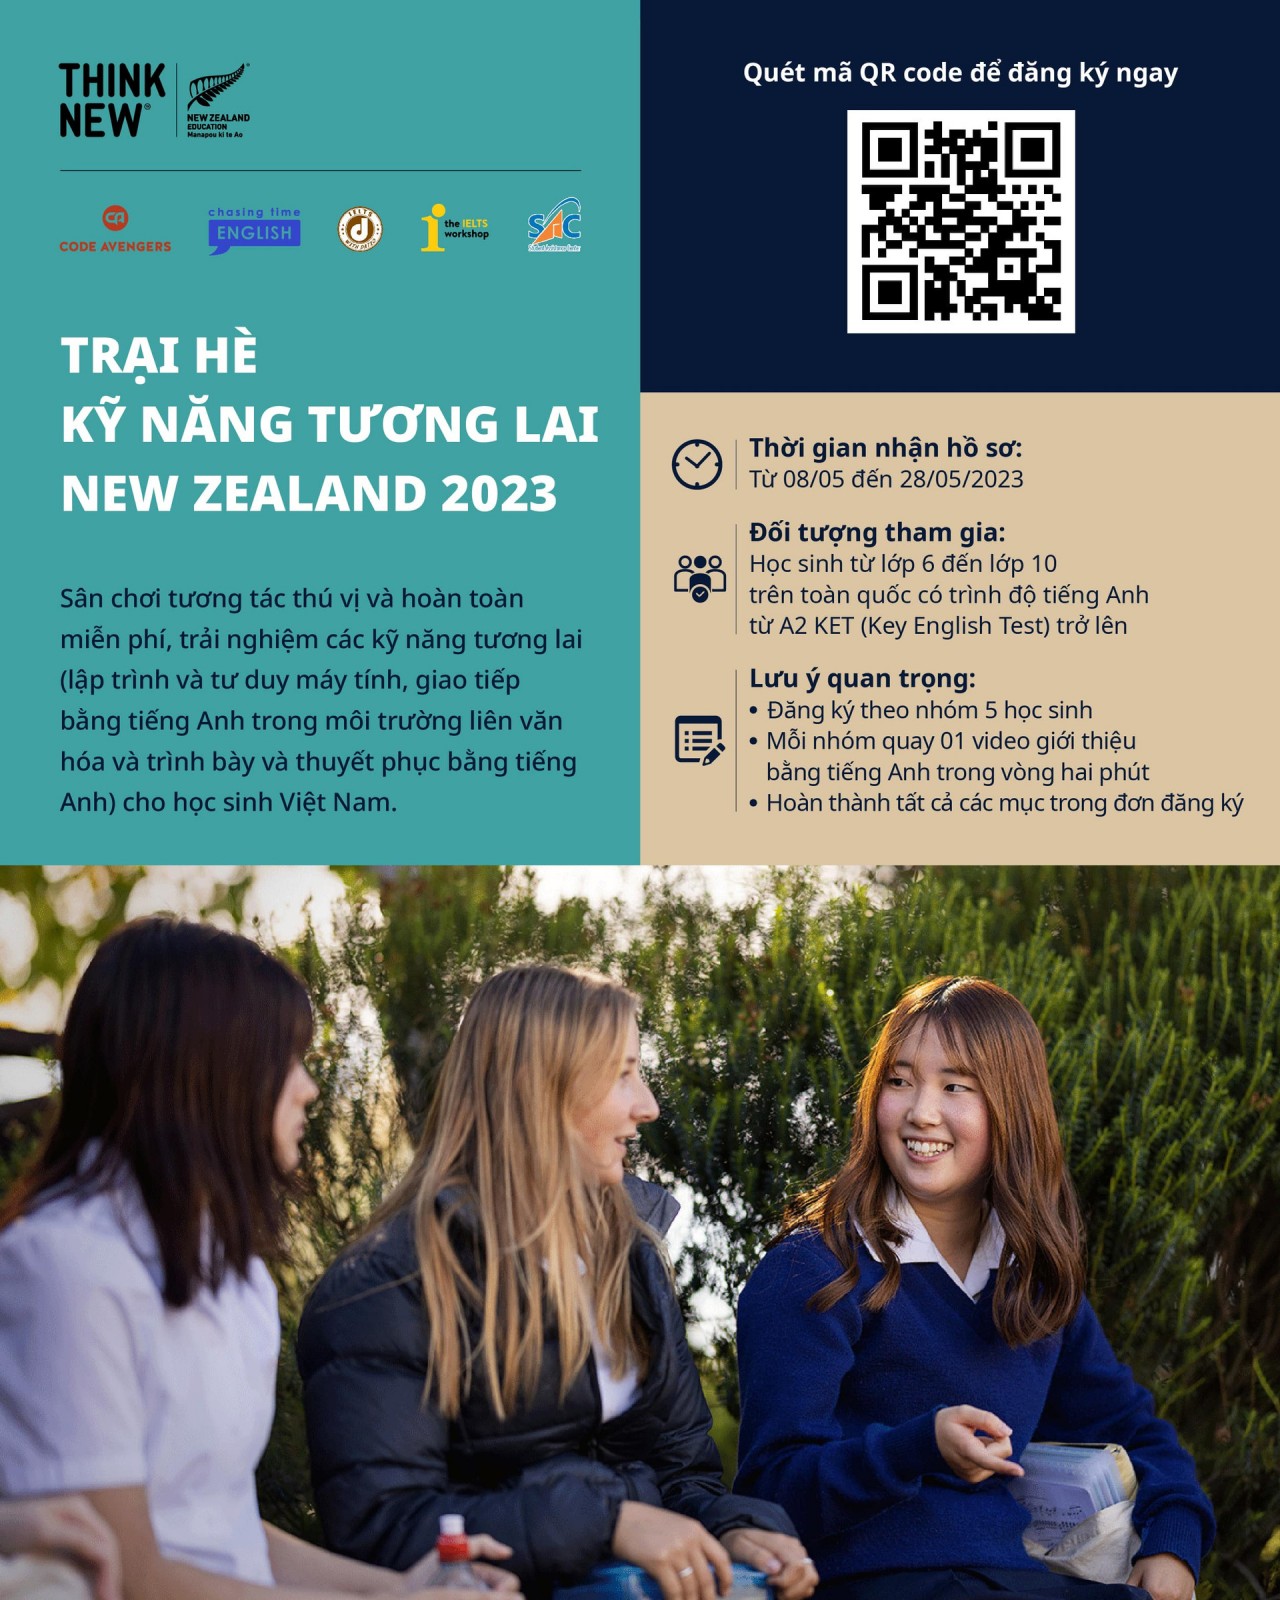 Trại hè Kỹ năng Tương lai New Zealand 2023 miễn phí cho học sinh | Giáo dục | Vietnam+ (VietnamPlus)